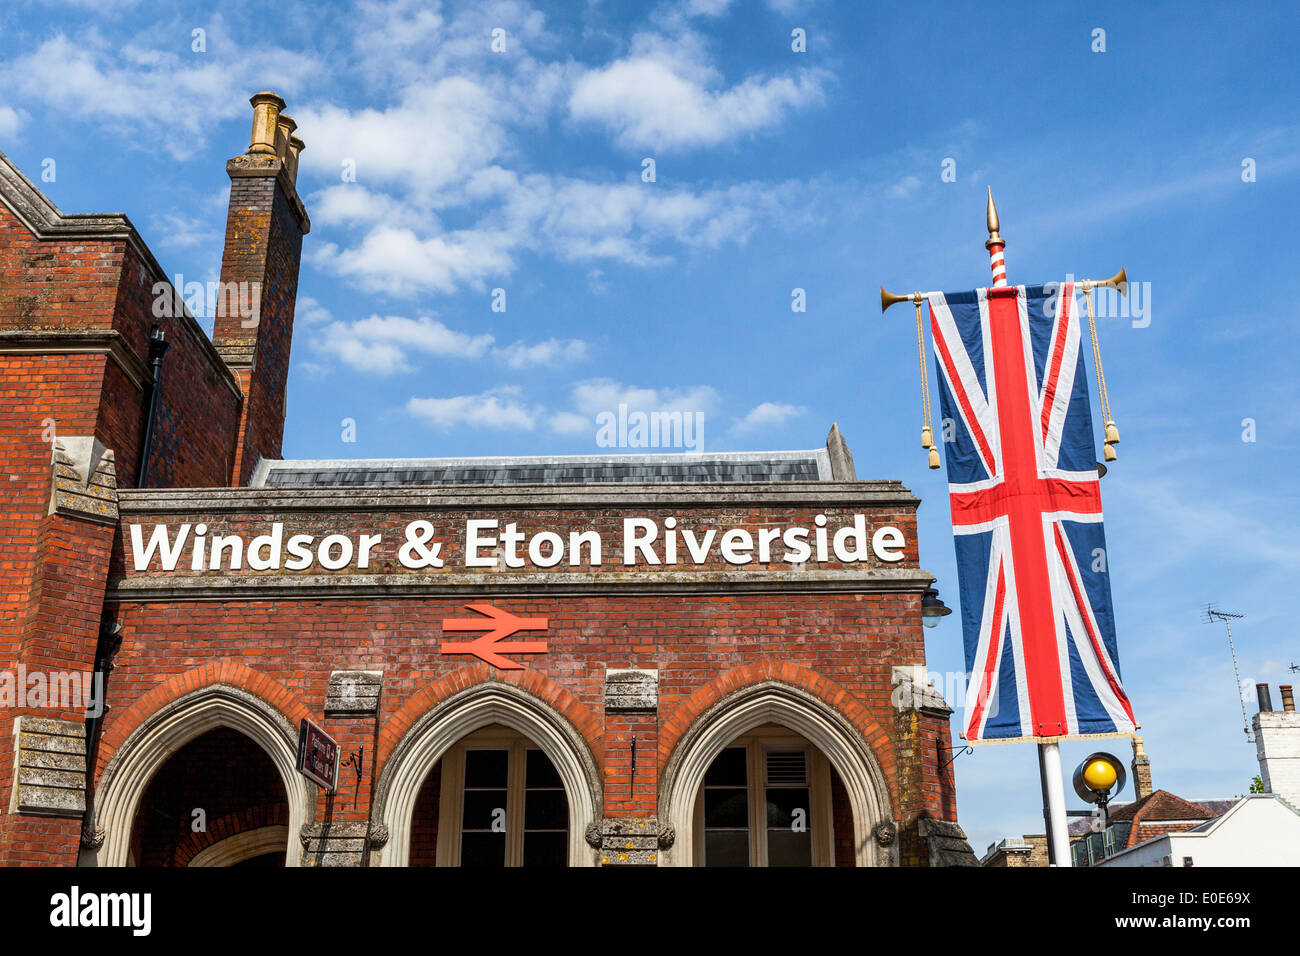 Windsor and Eton railway station brick building and Union Jack flag - Windsor, Berkshire, UK Stock Photo